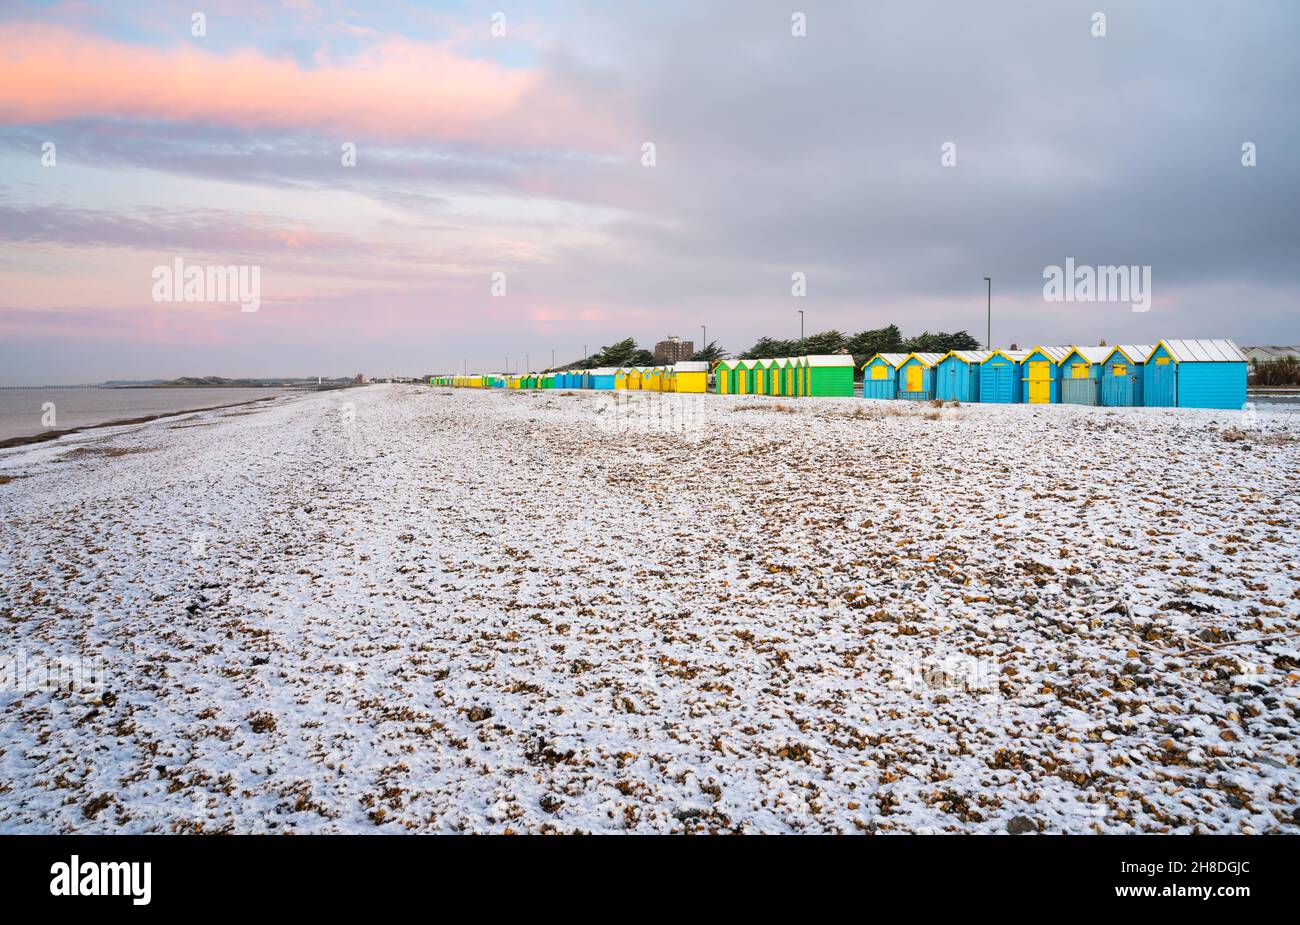 Des cabanes de plage et la plage couverte d'une fine couche de neige en hiver à Littlehampton, West Sussex, Angleterre, Royaume-Uni. Banque D'Images